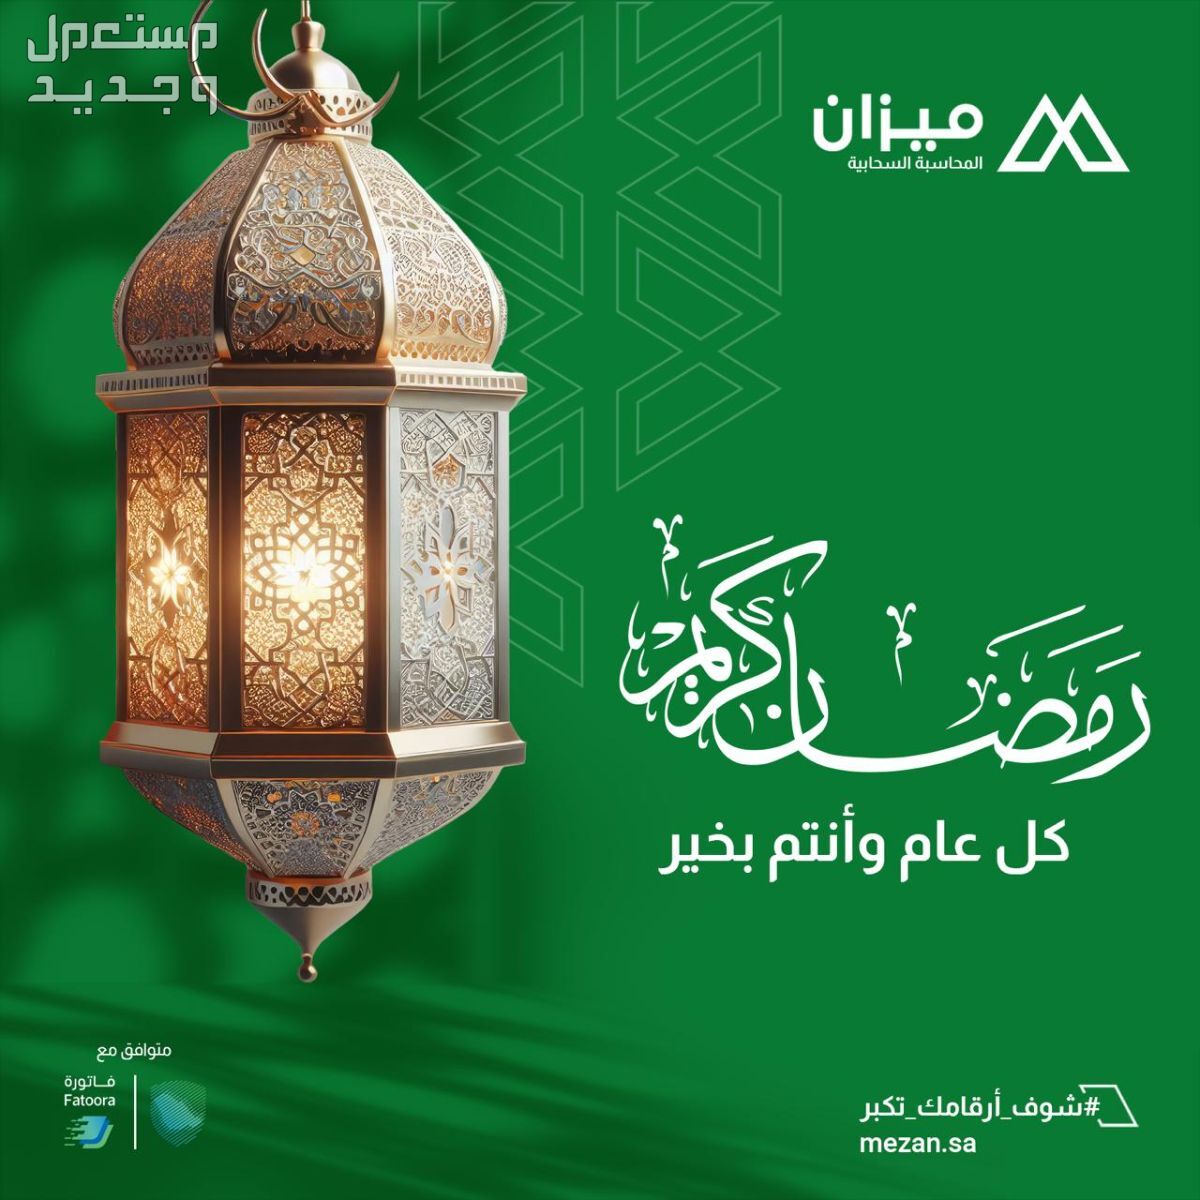 برنامج ميزان محاسبي سحابي معتمد وخصومات بمناسبة شهر رمضان المبارك